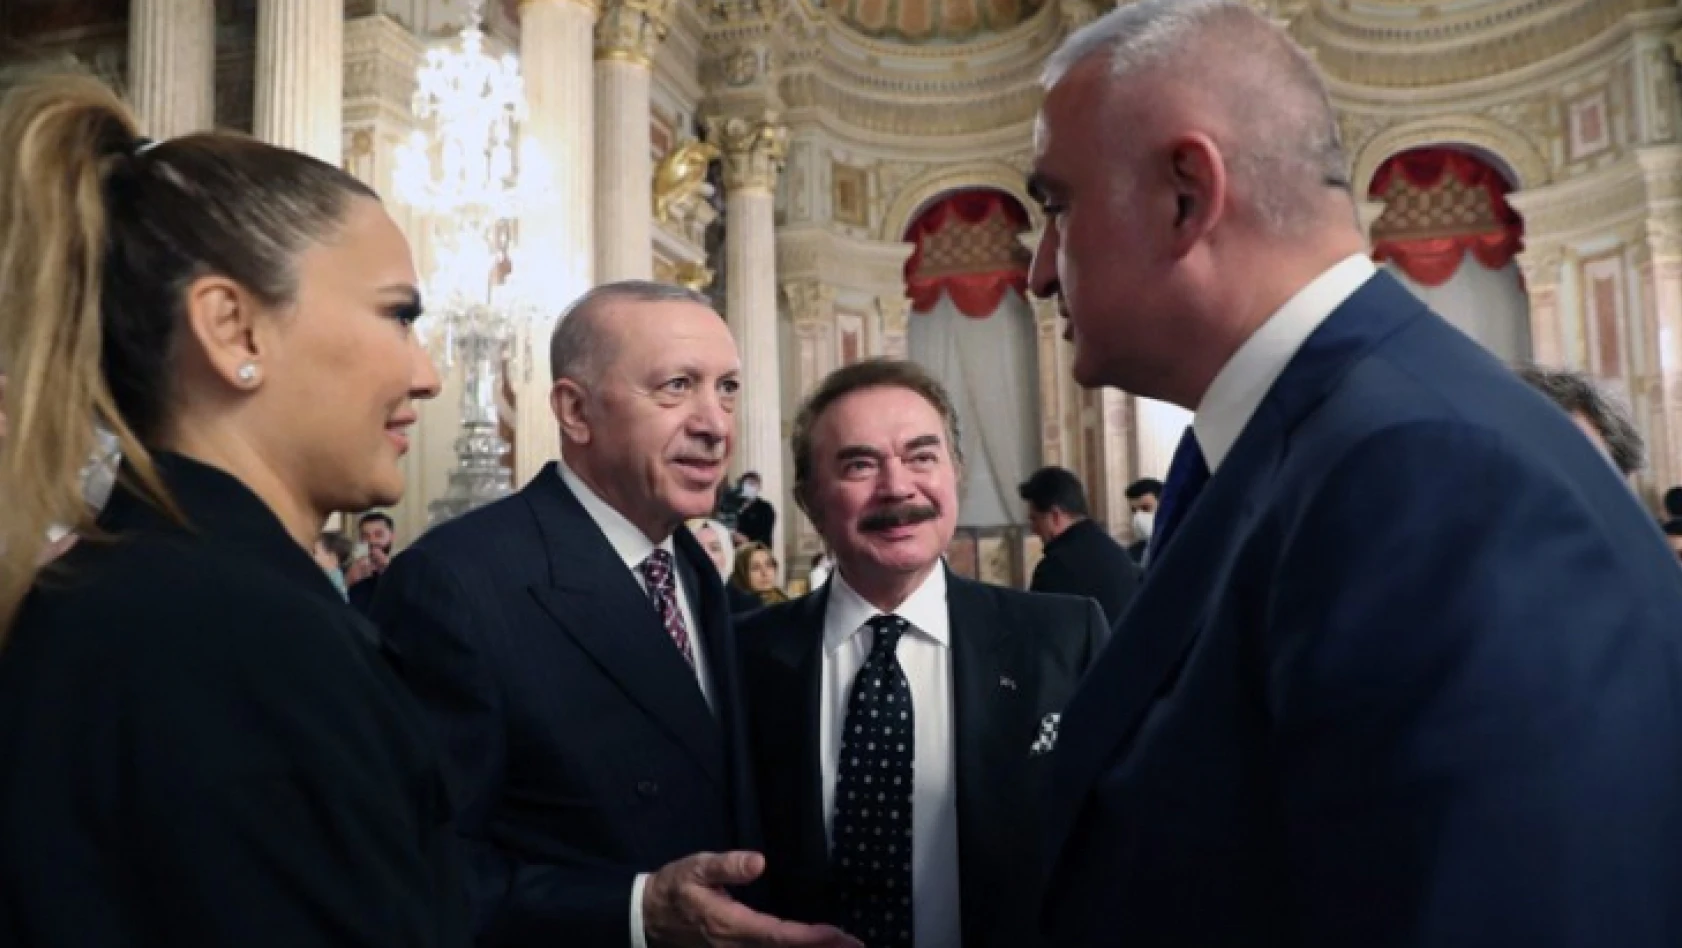 Demet Akalın, Cumhurbaşkanı Erdoğan'dan müzik yasağının kaldırılmasını rica etti